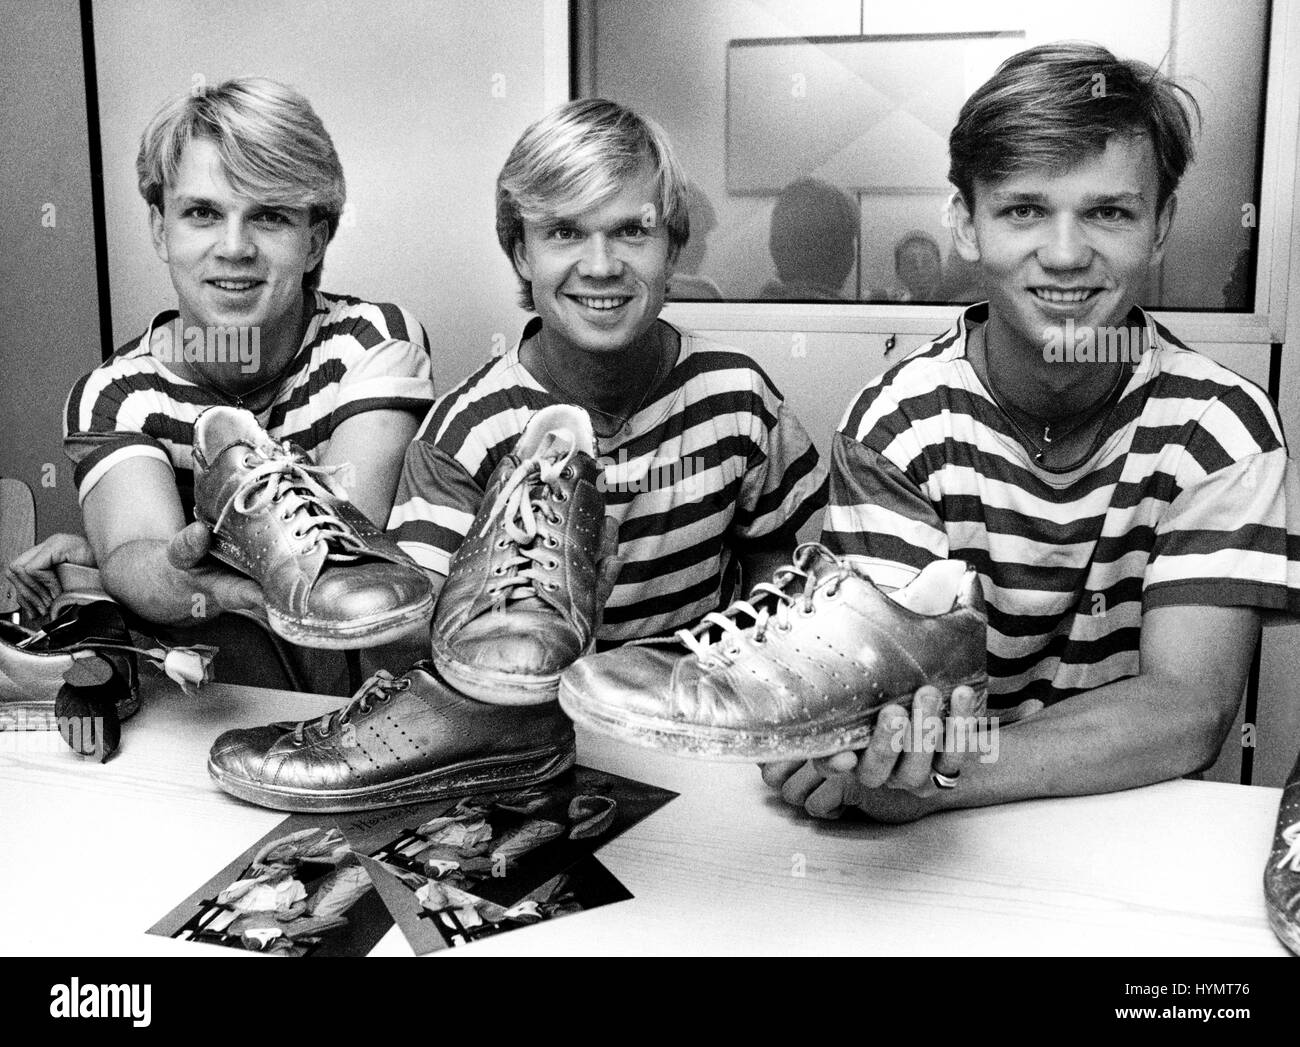 HERREYS gruppo svedese con il fratello Richard,Per och Louis in Concorso Eurovisione della canzone che hanno vinto 1984 con la canzone Goldene scarpe Foto Stock